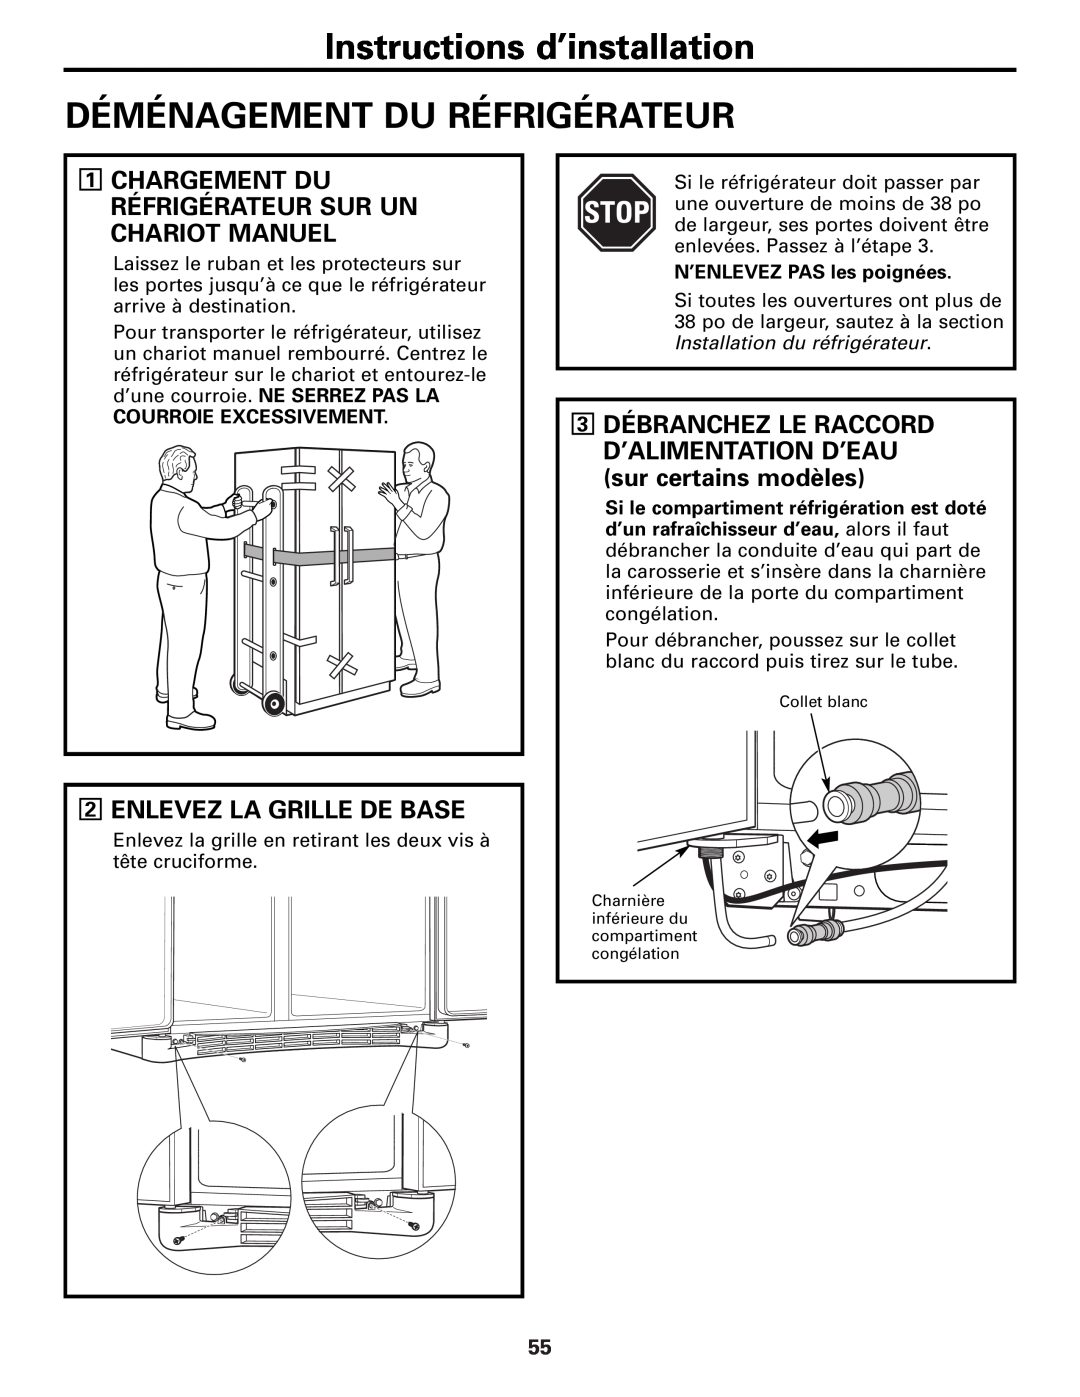 GE 25 and 27 Instructions d’installation, Déménagement Du Réfrigérateur, 2ENLEVEZ LA GRILLE DE BASE 